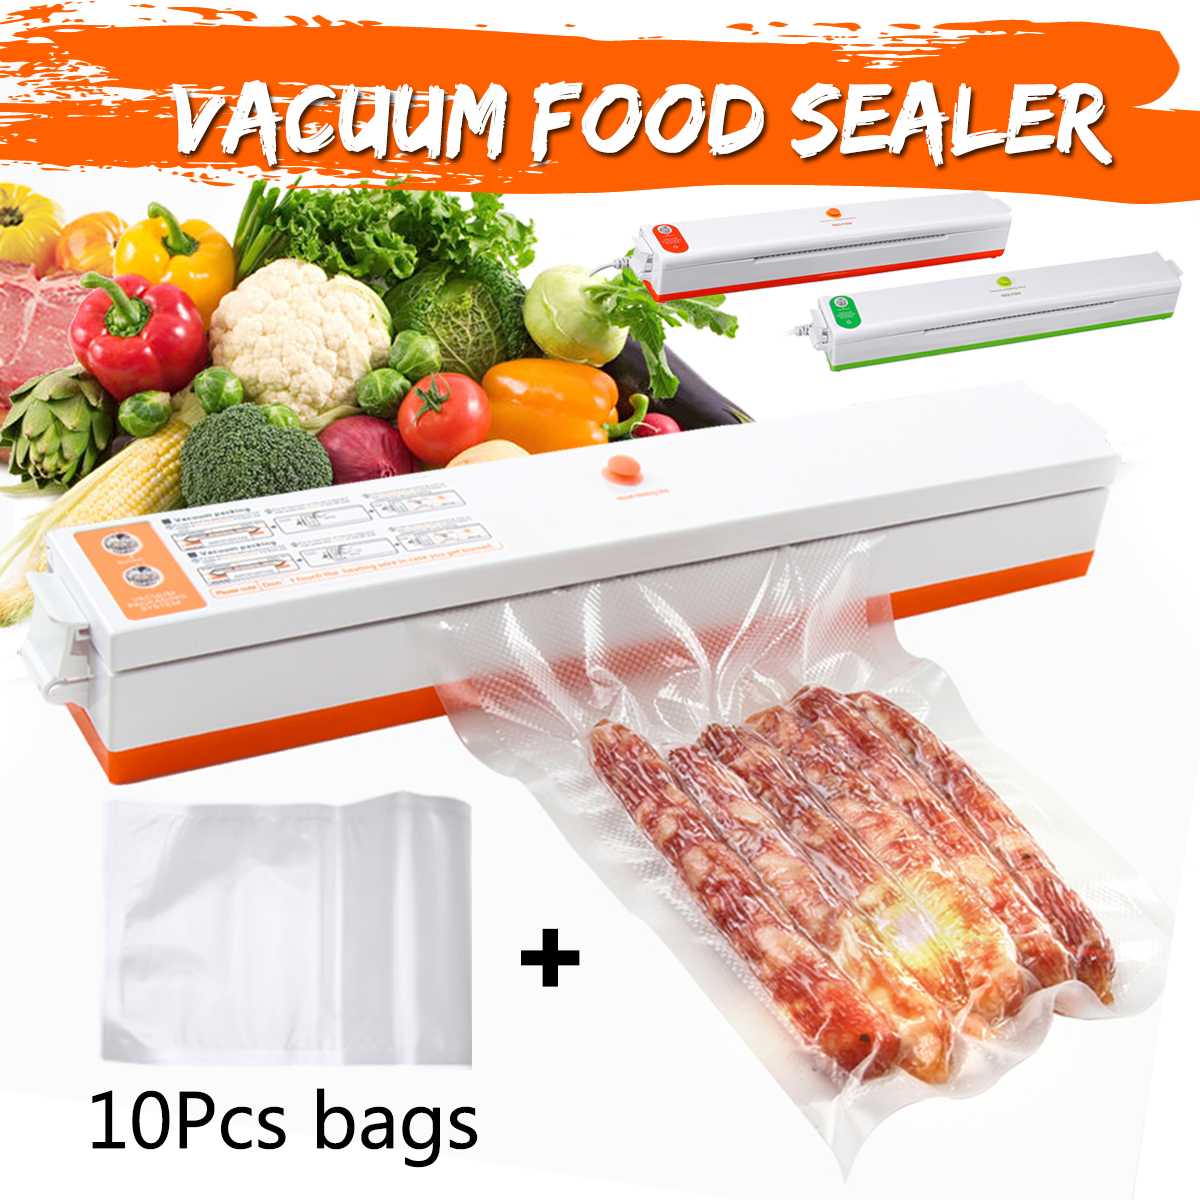 Huishoudelijke Voedsel Sealer Saver 220V Vacuüm Voedsel Sealer Machine Vacuüm Sluitmachine Film Container Omvat Met 10 Vacuümverpakker